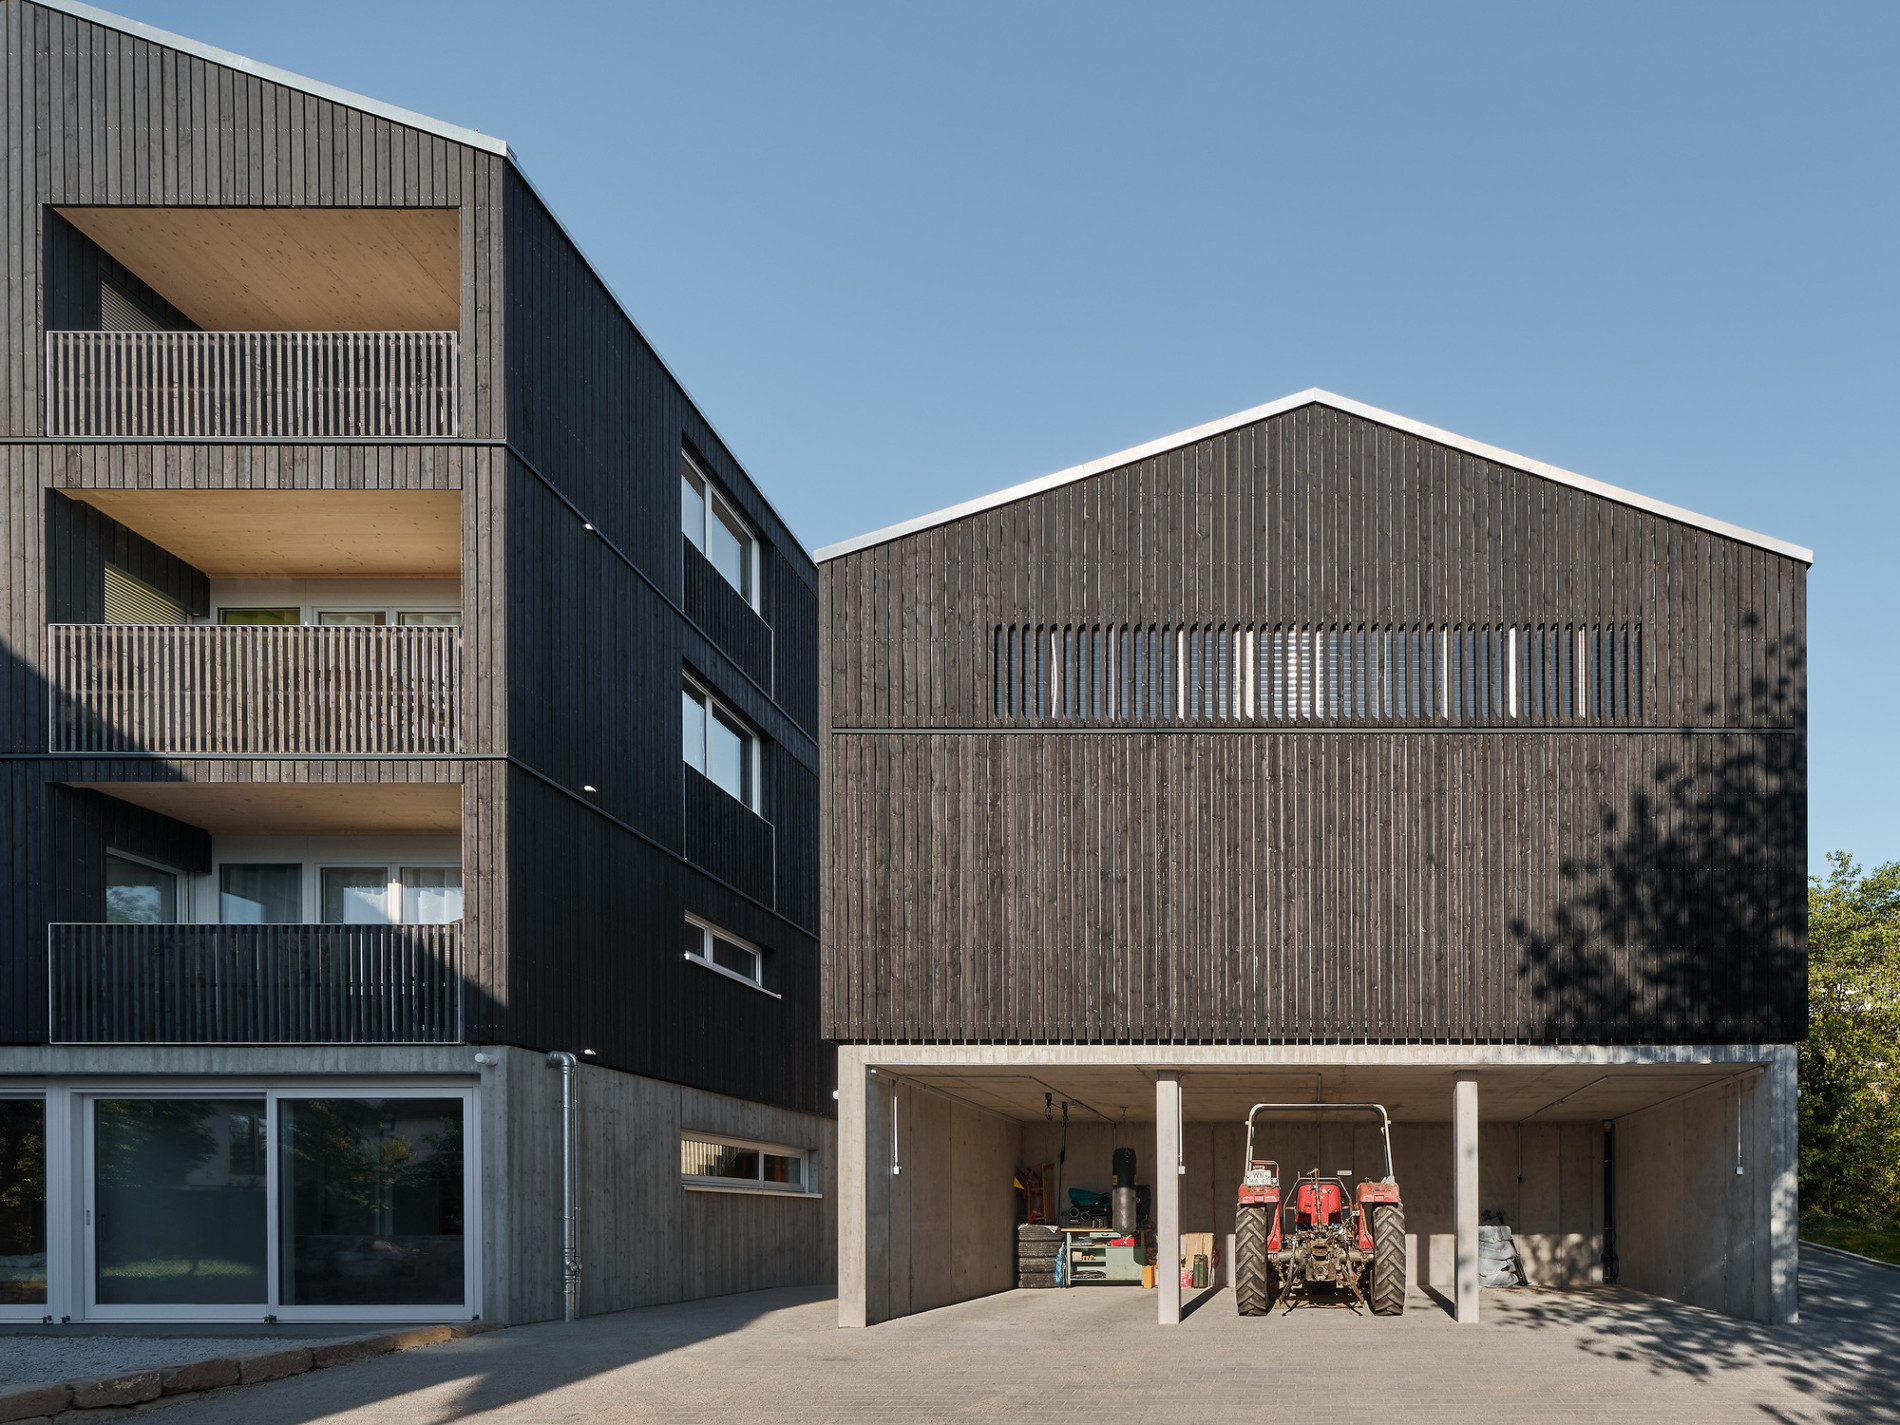 Housing and Workshop Weilerstraße / CAPE, Prof. Markus Binder & Schleicher ragaller architekten | ArchDaily